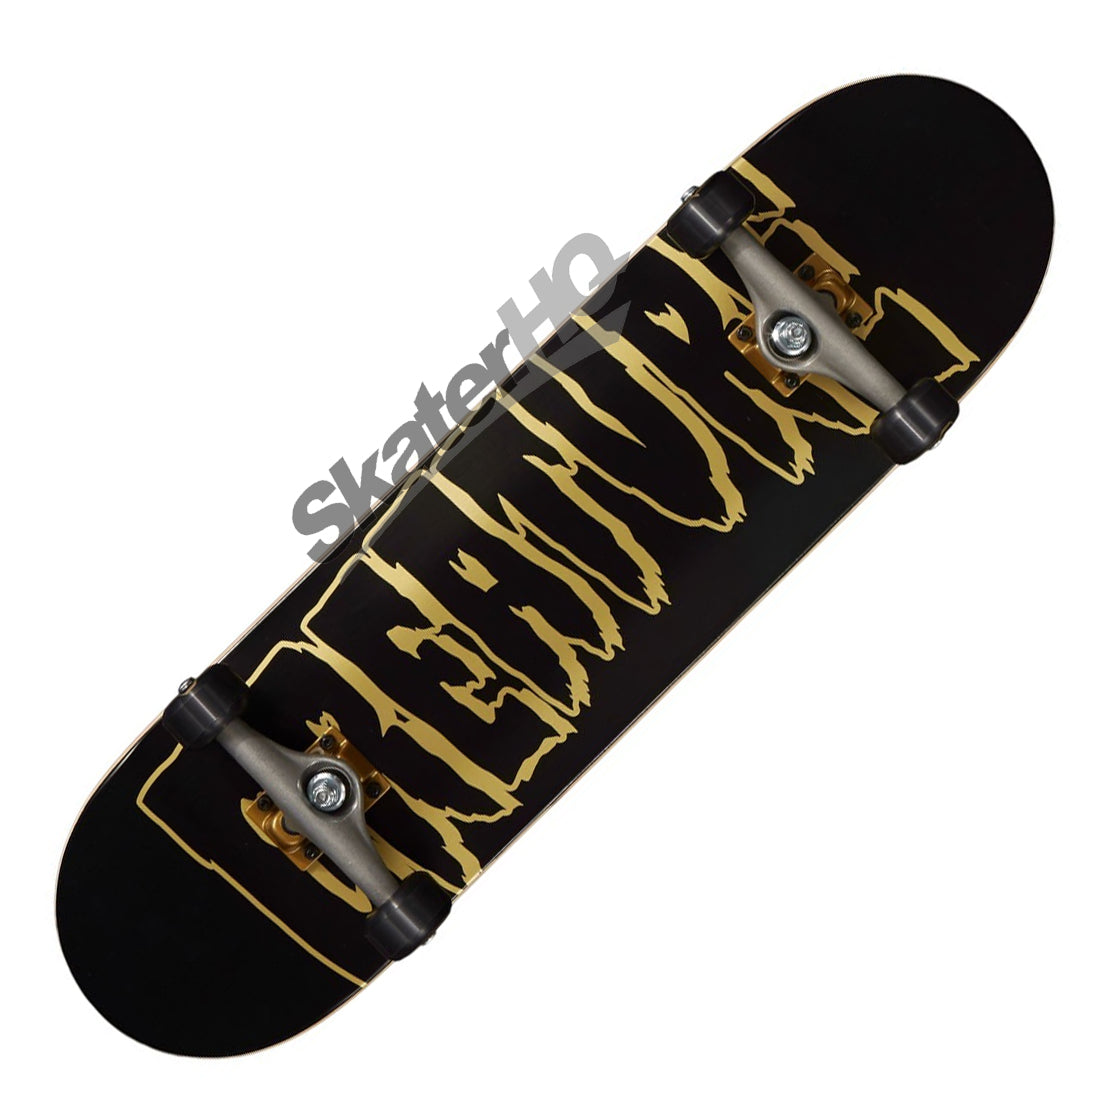 Creature Logo Outline 8.25 Complete - Black/Gold Skateboard Completes Modern Street